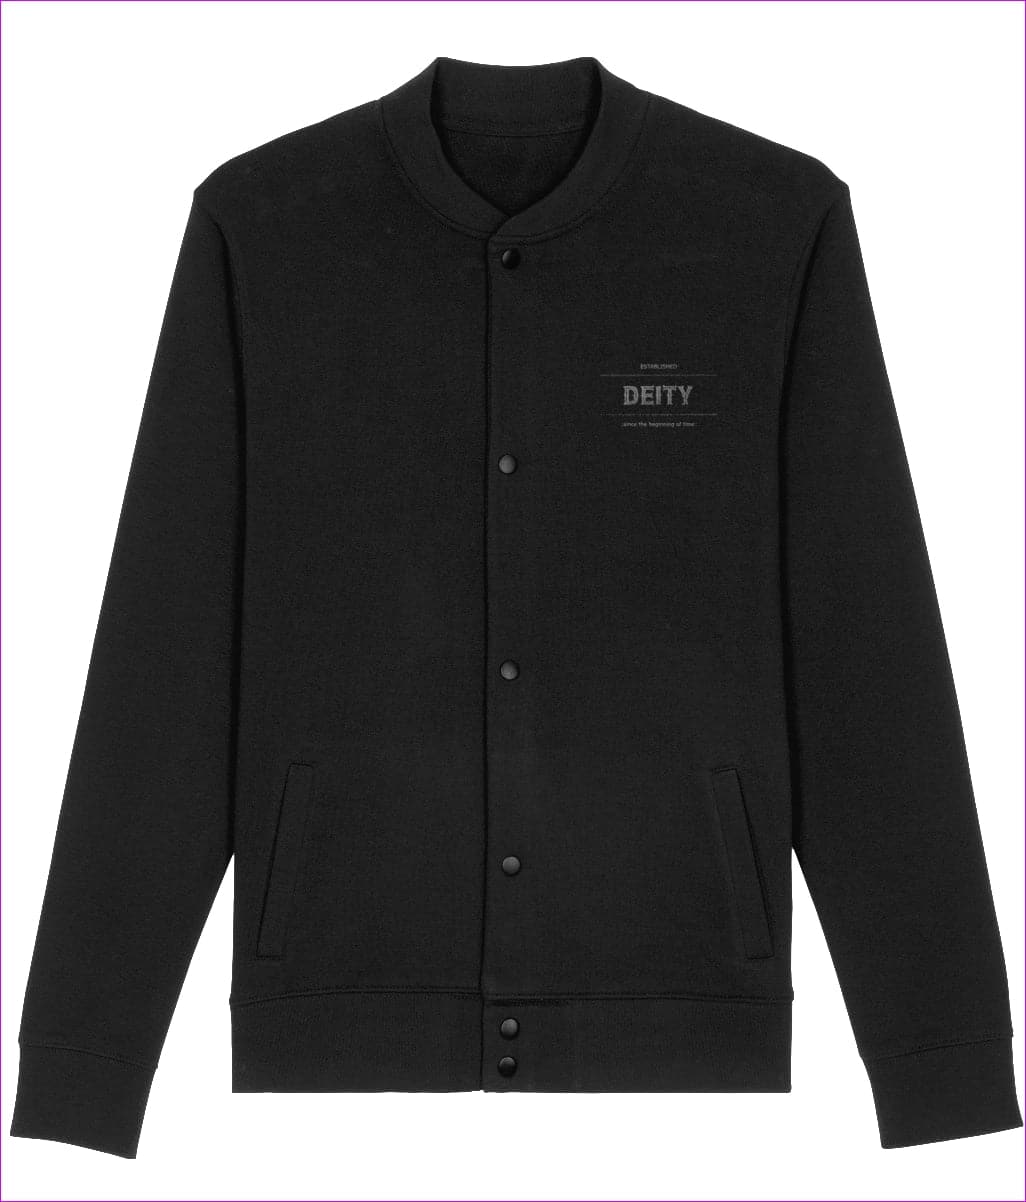 Black Deity Embroidered Premium Organic Bounder Jacket - unisex jacket at TFC&H Co.